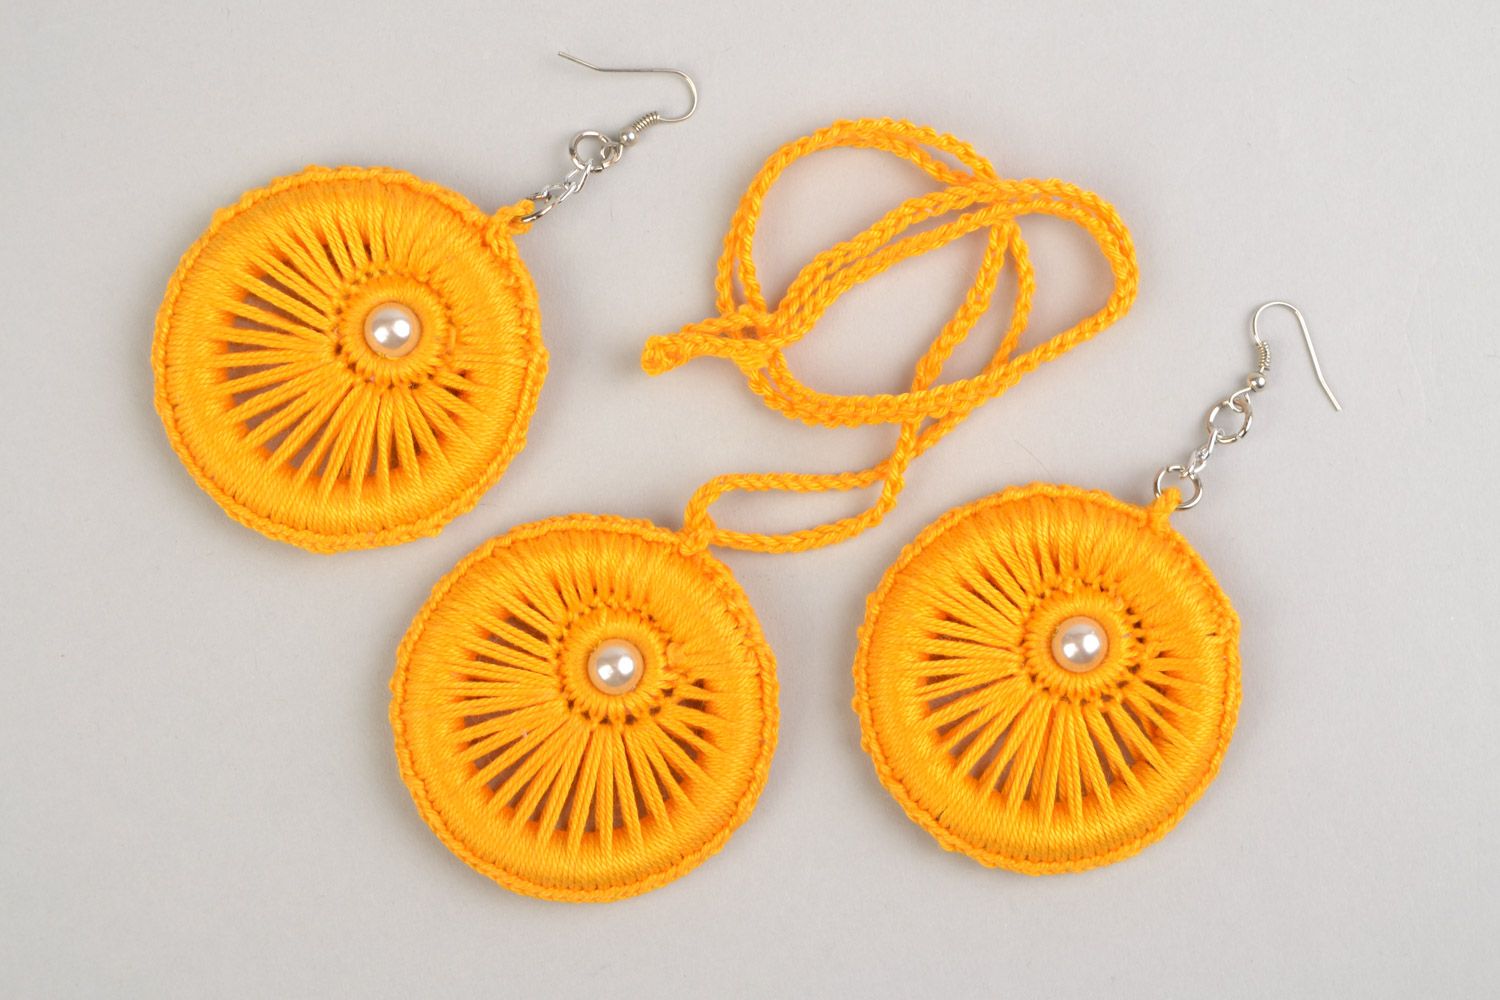 Textil Schmuckset Lange Ohrringe und 
Anhänger aus Fäden geflochten in Gelb handmade foto 2